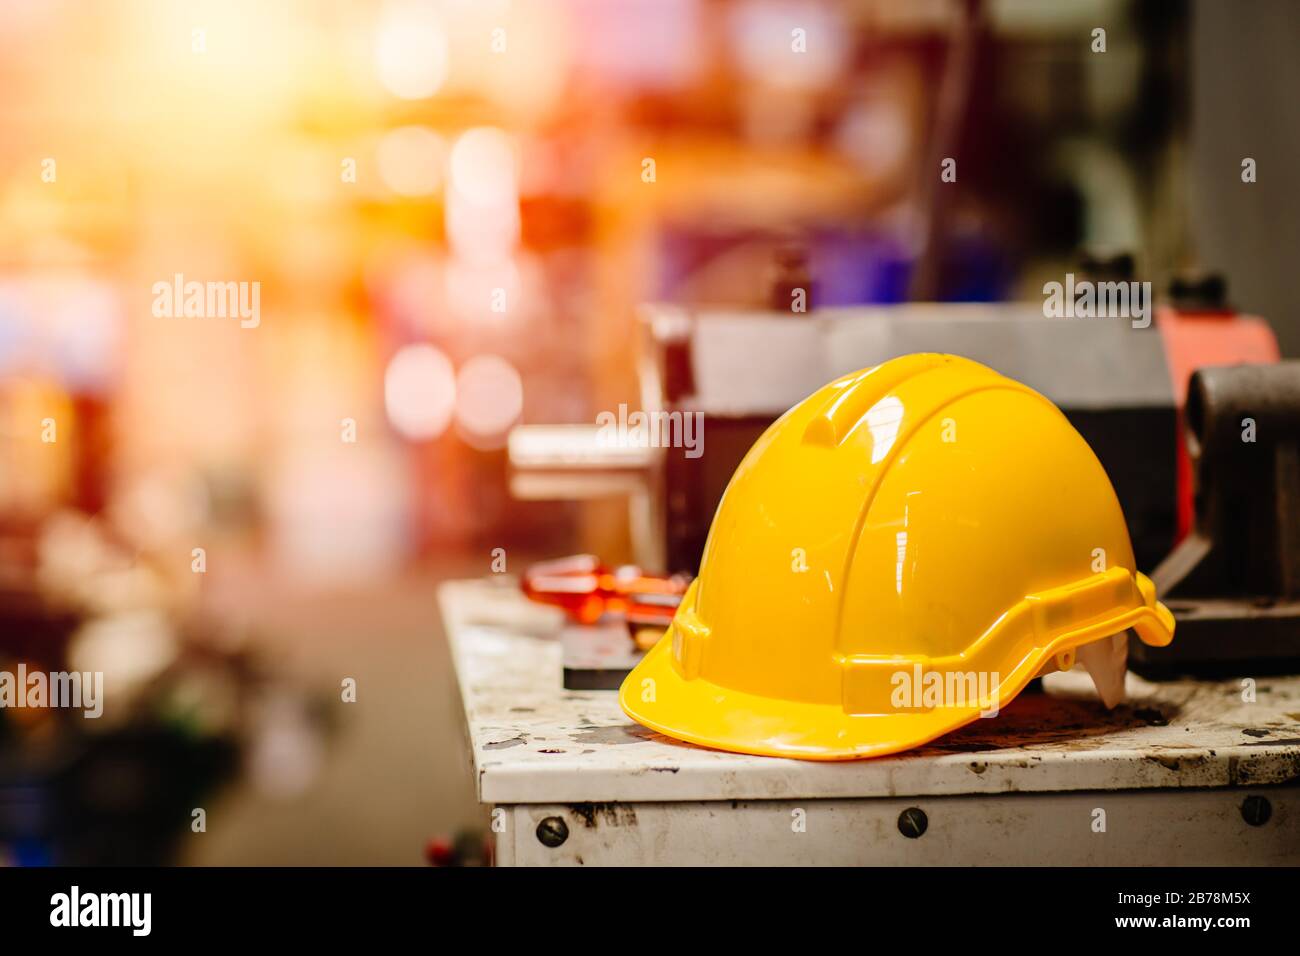 Gelbe Helm-Hardhat-Sicherheit für Werksanarbeiter, die an einem Gefahrenarbeitsplatz arbeiten und Platz für Text haben. Stockfoto